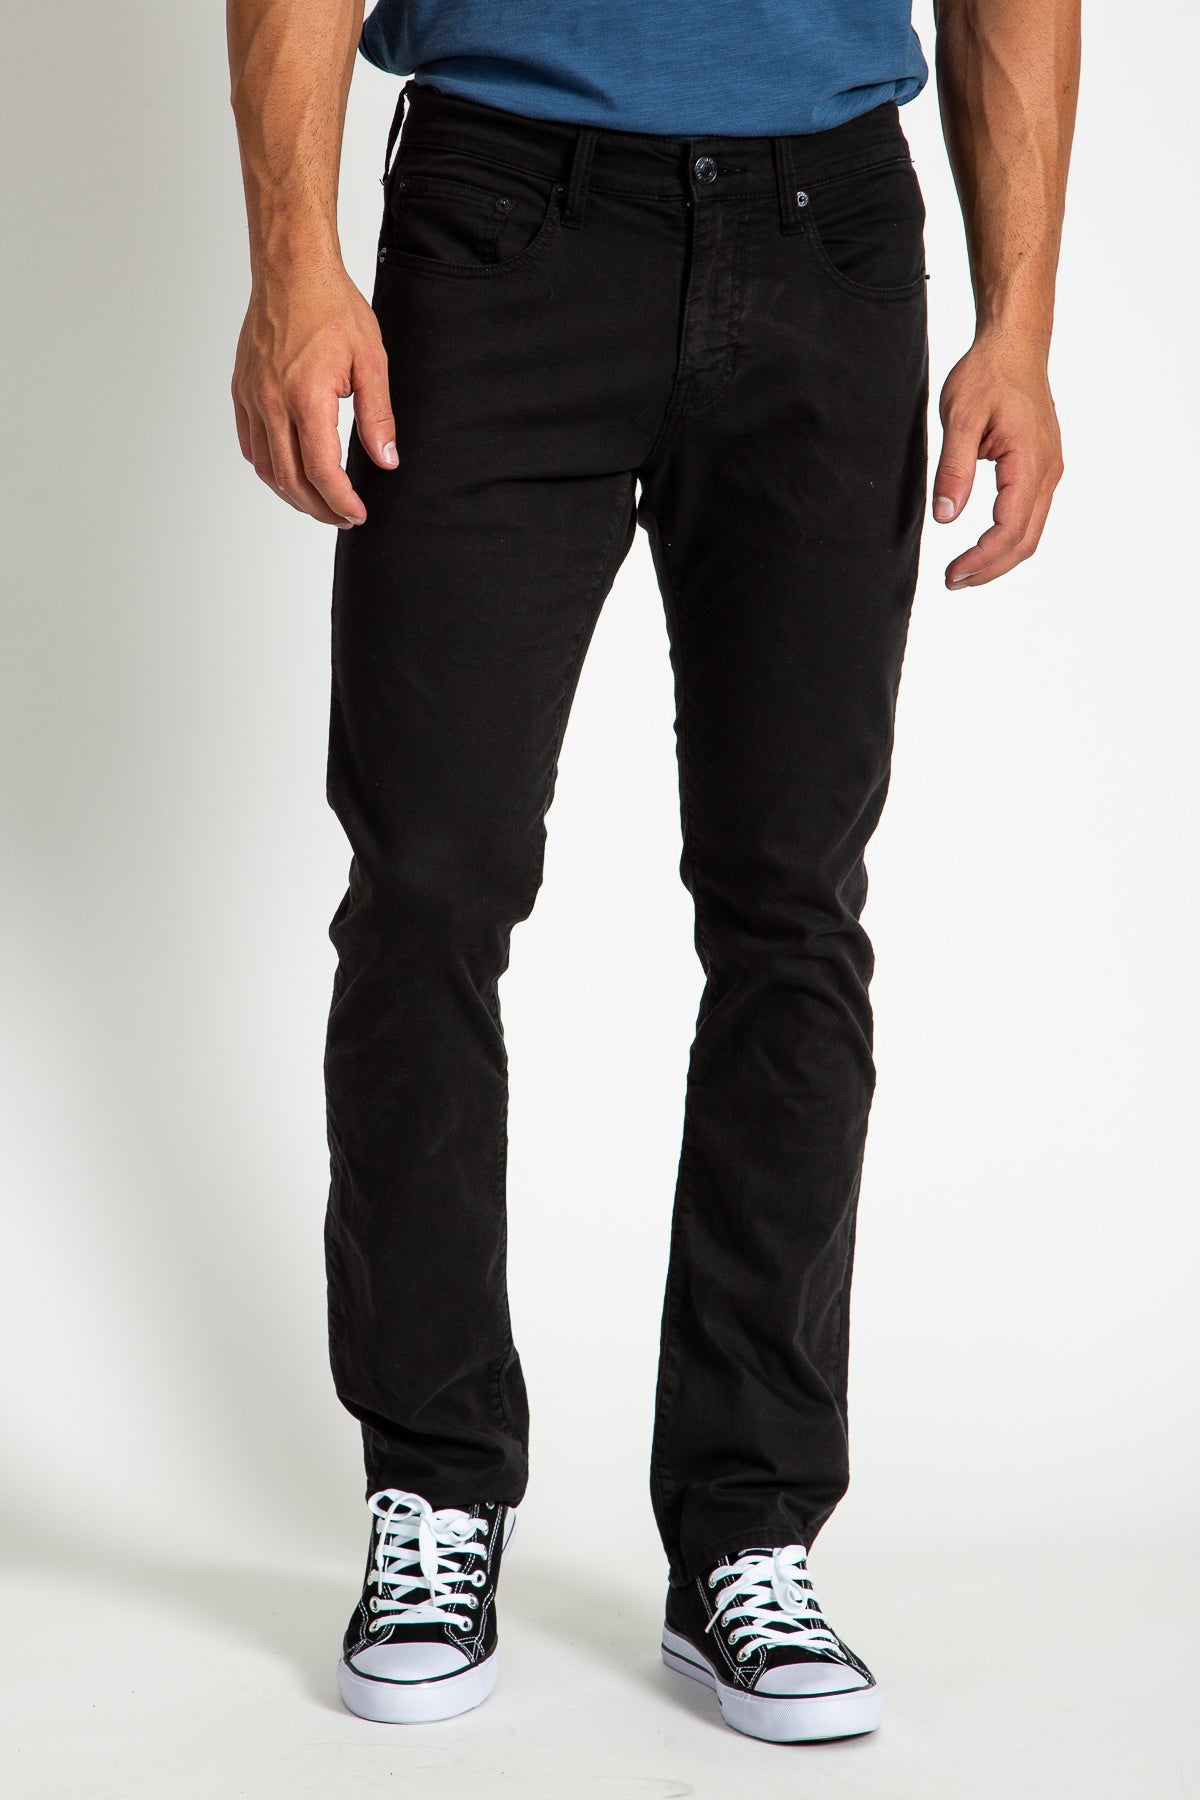 SLIM TWILL PANTS IN JET BLACK – Stitch's Jeans